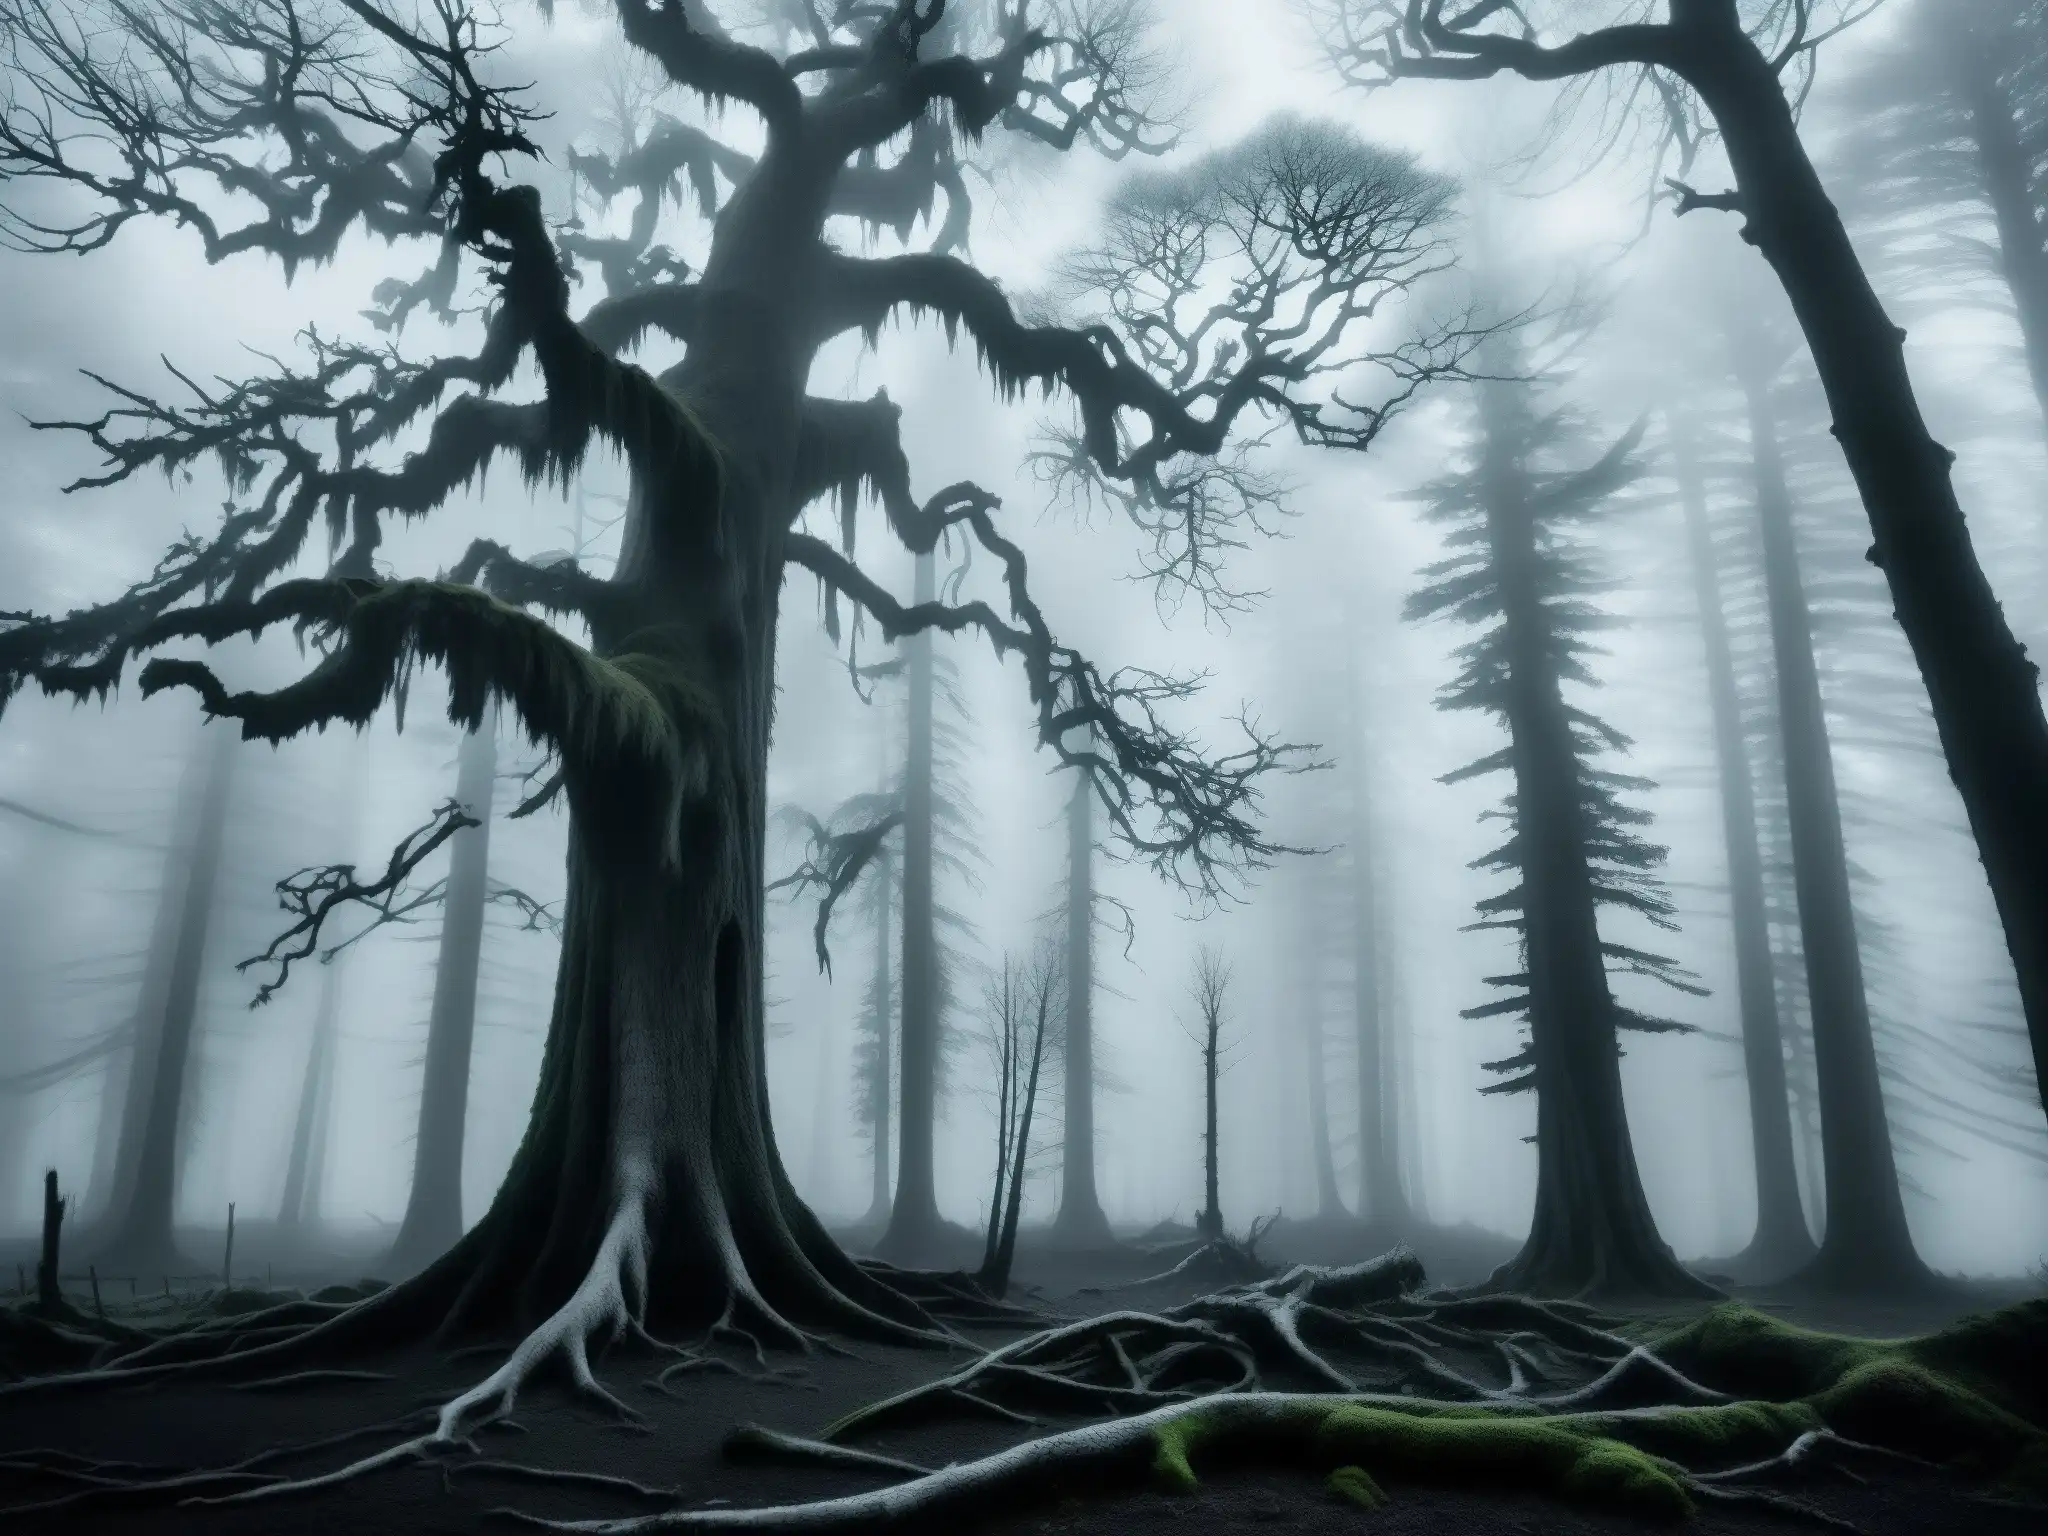 Una fotografía en blanco y negro de un bosque antiguo envuelto en niebla, evocando la conexión entre La Llorona y estrés postraumático